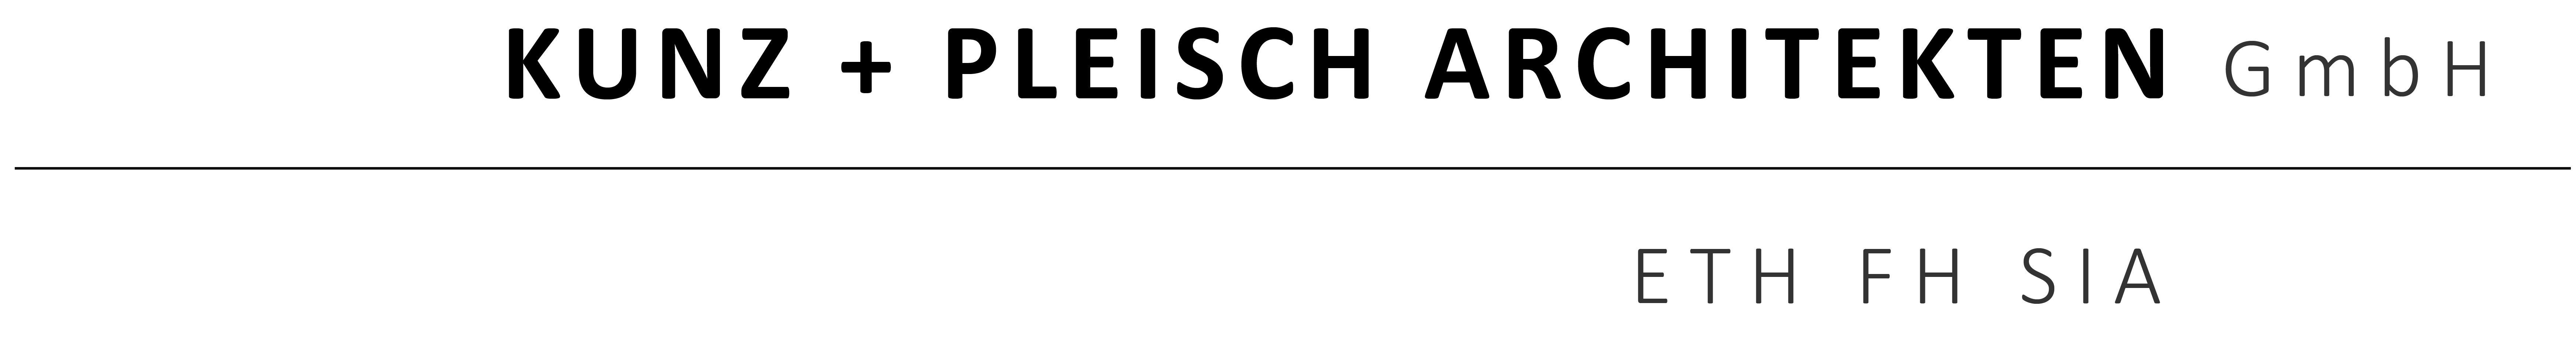 Kunz + Pleisch Architekten GmbH